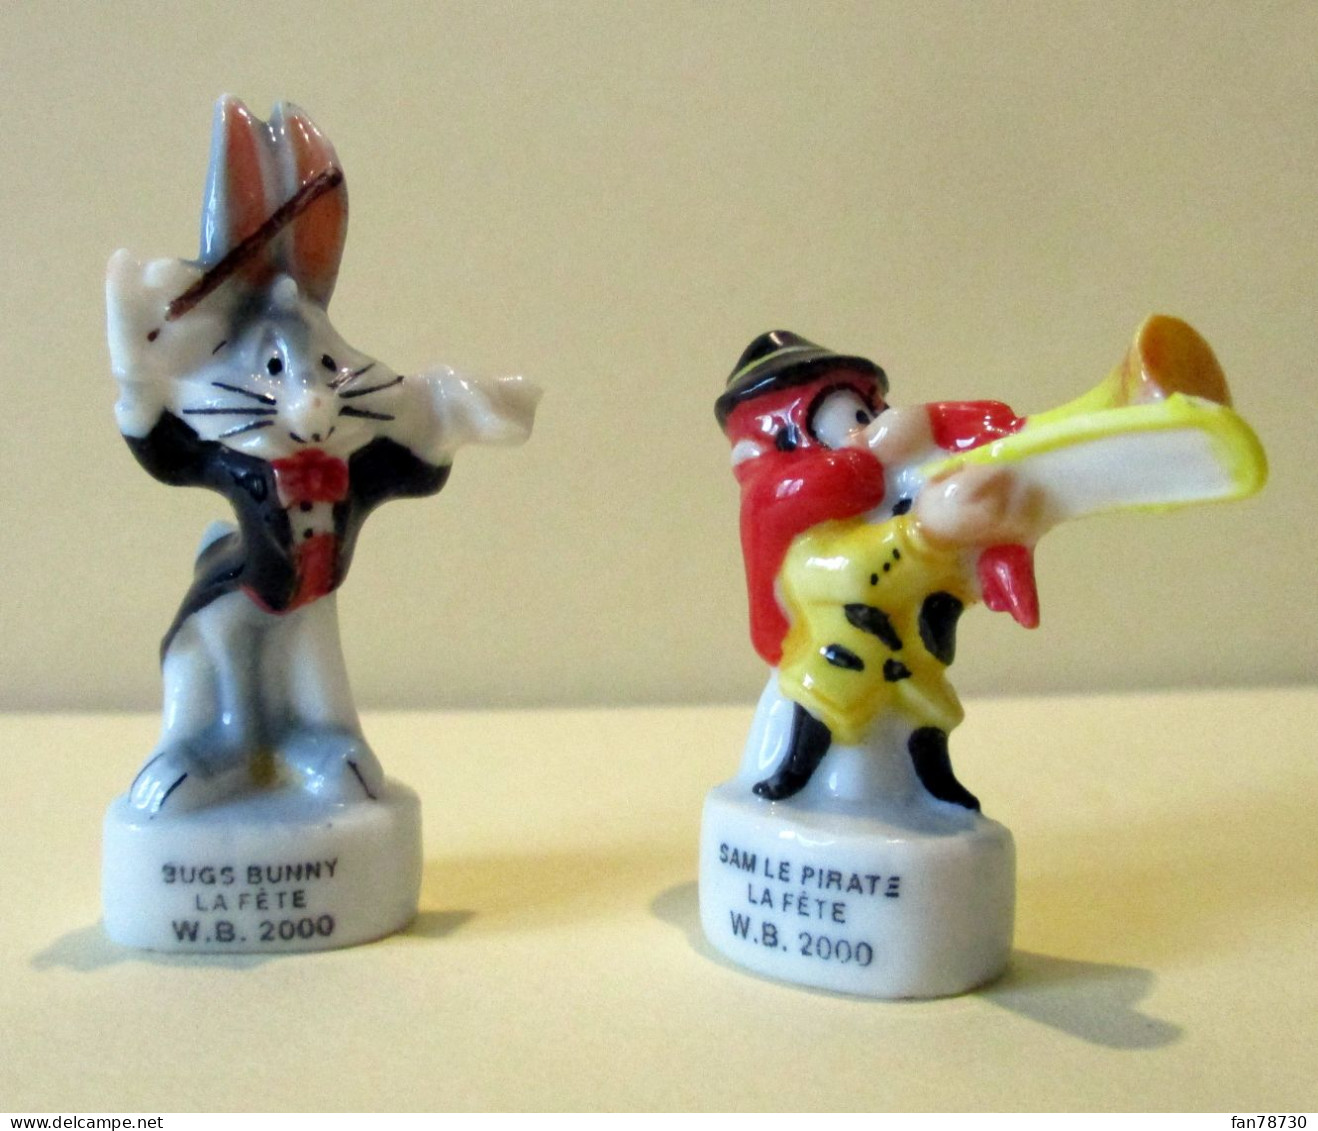 Fèves Brillantes - La Fête- W.B. 2000 - Sam Le Pirate Et Bugs Bunny - Frais Du Site Déduits - Dessins Animés